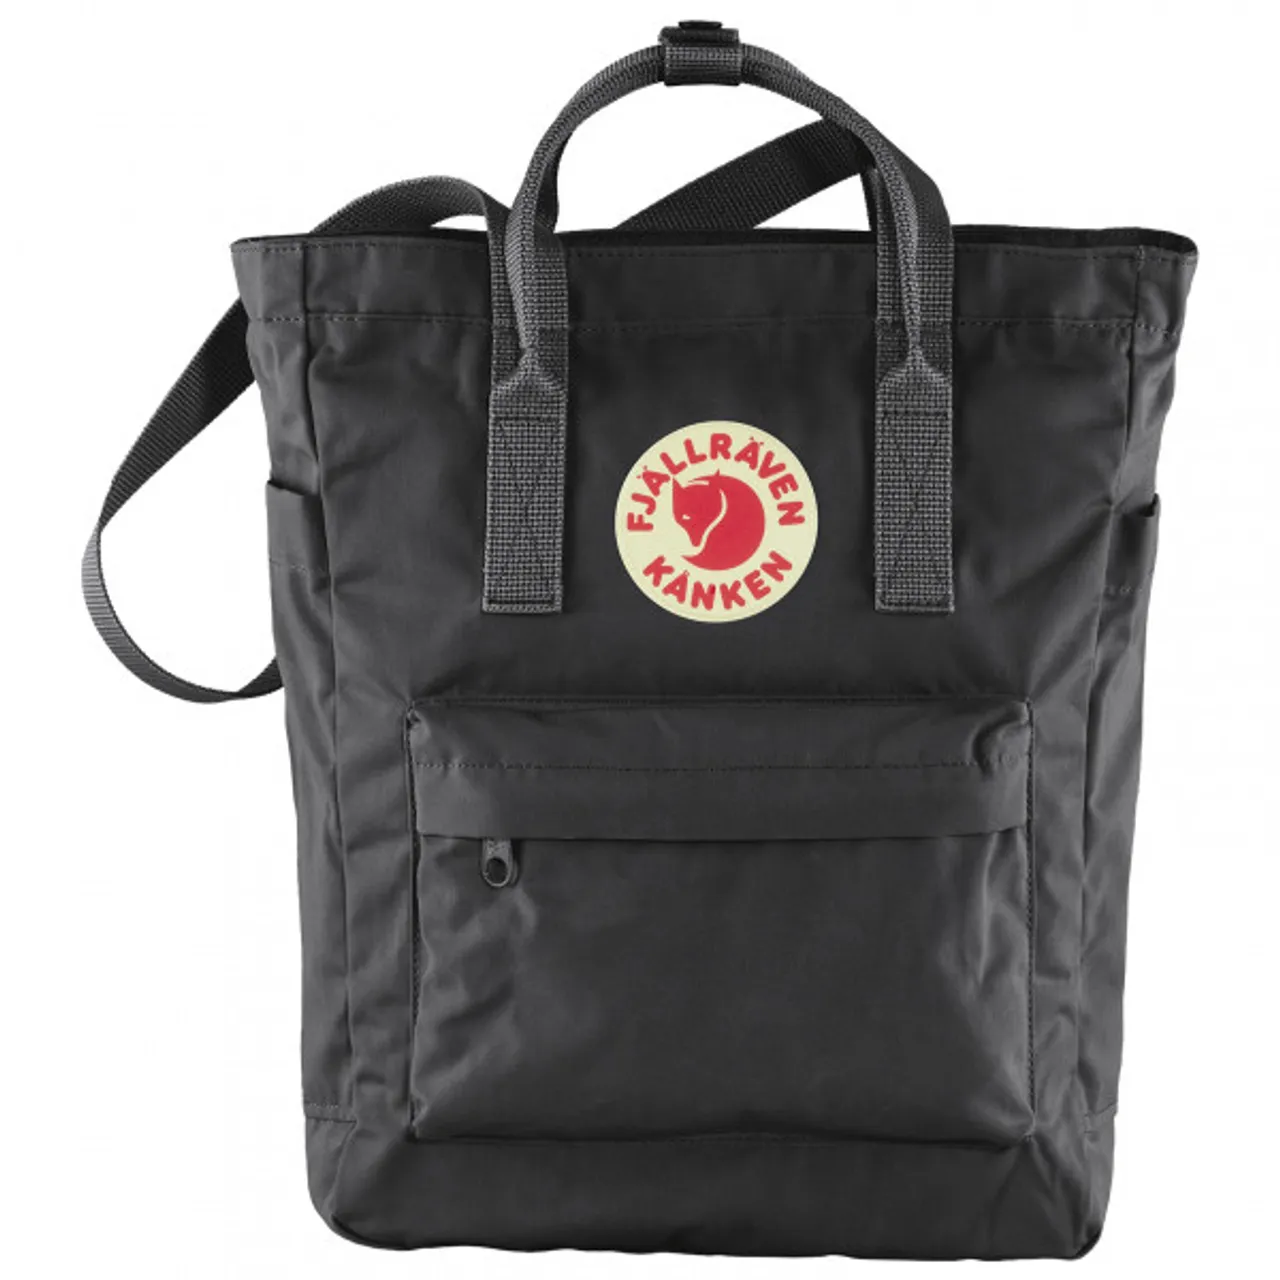 Fjällräven - Kånken Totepack - Shoulder bag size 14 l, black/grey